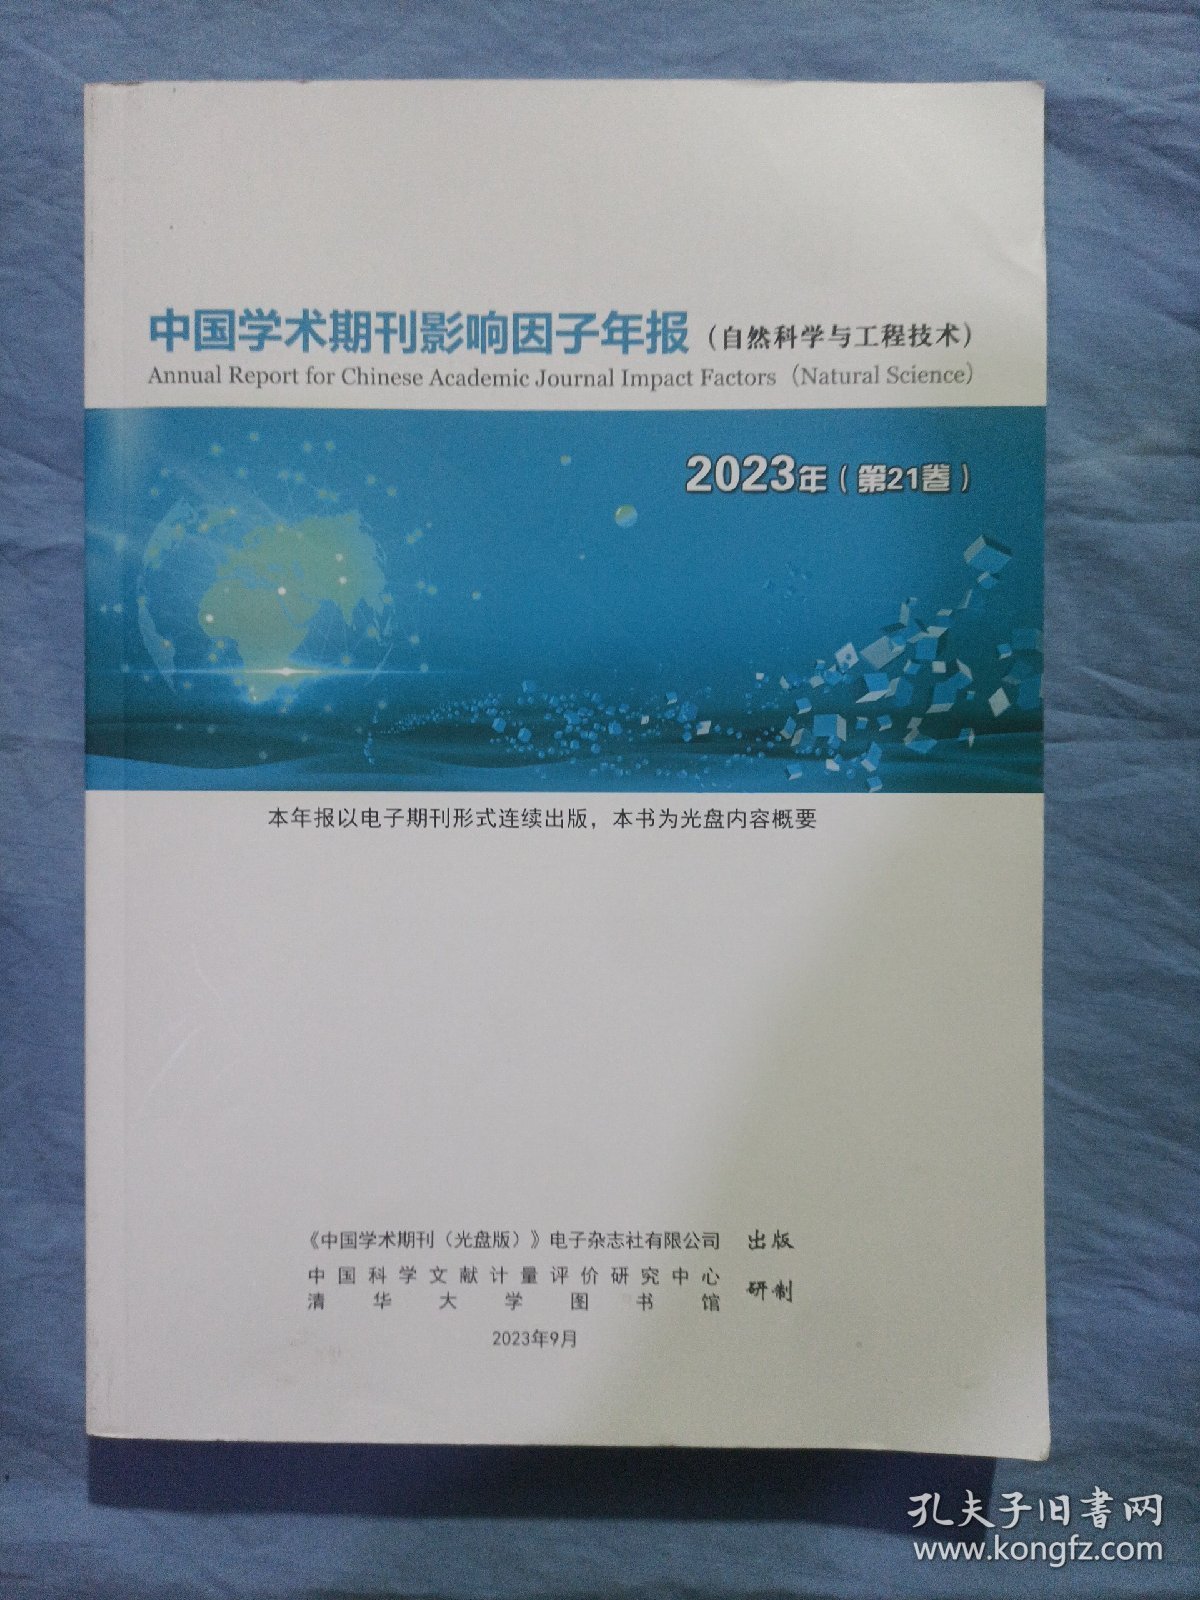 中国学术期刊影响因子年报。（自然科学与工程技术）2023年第21卷。